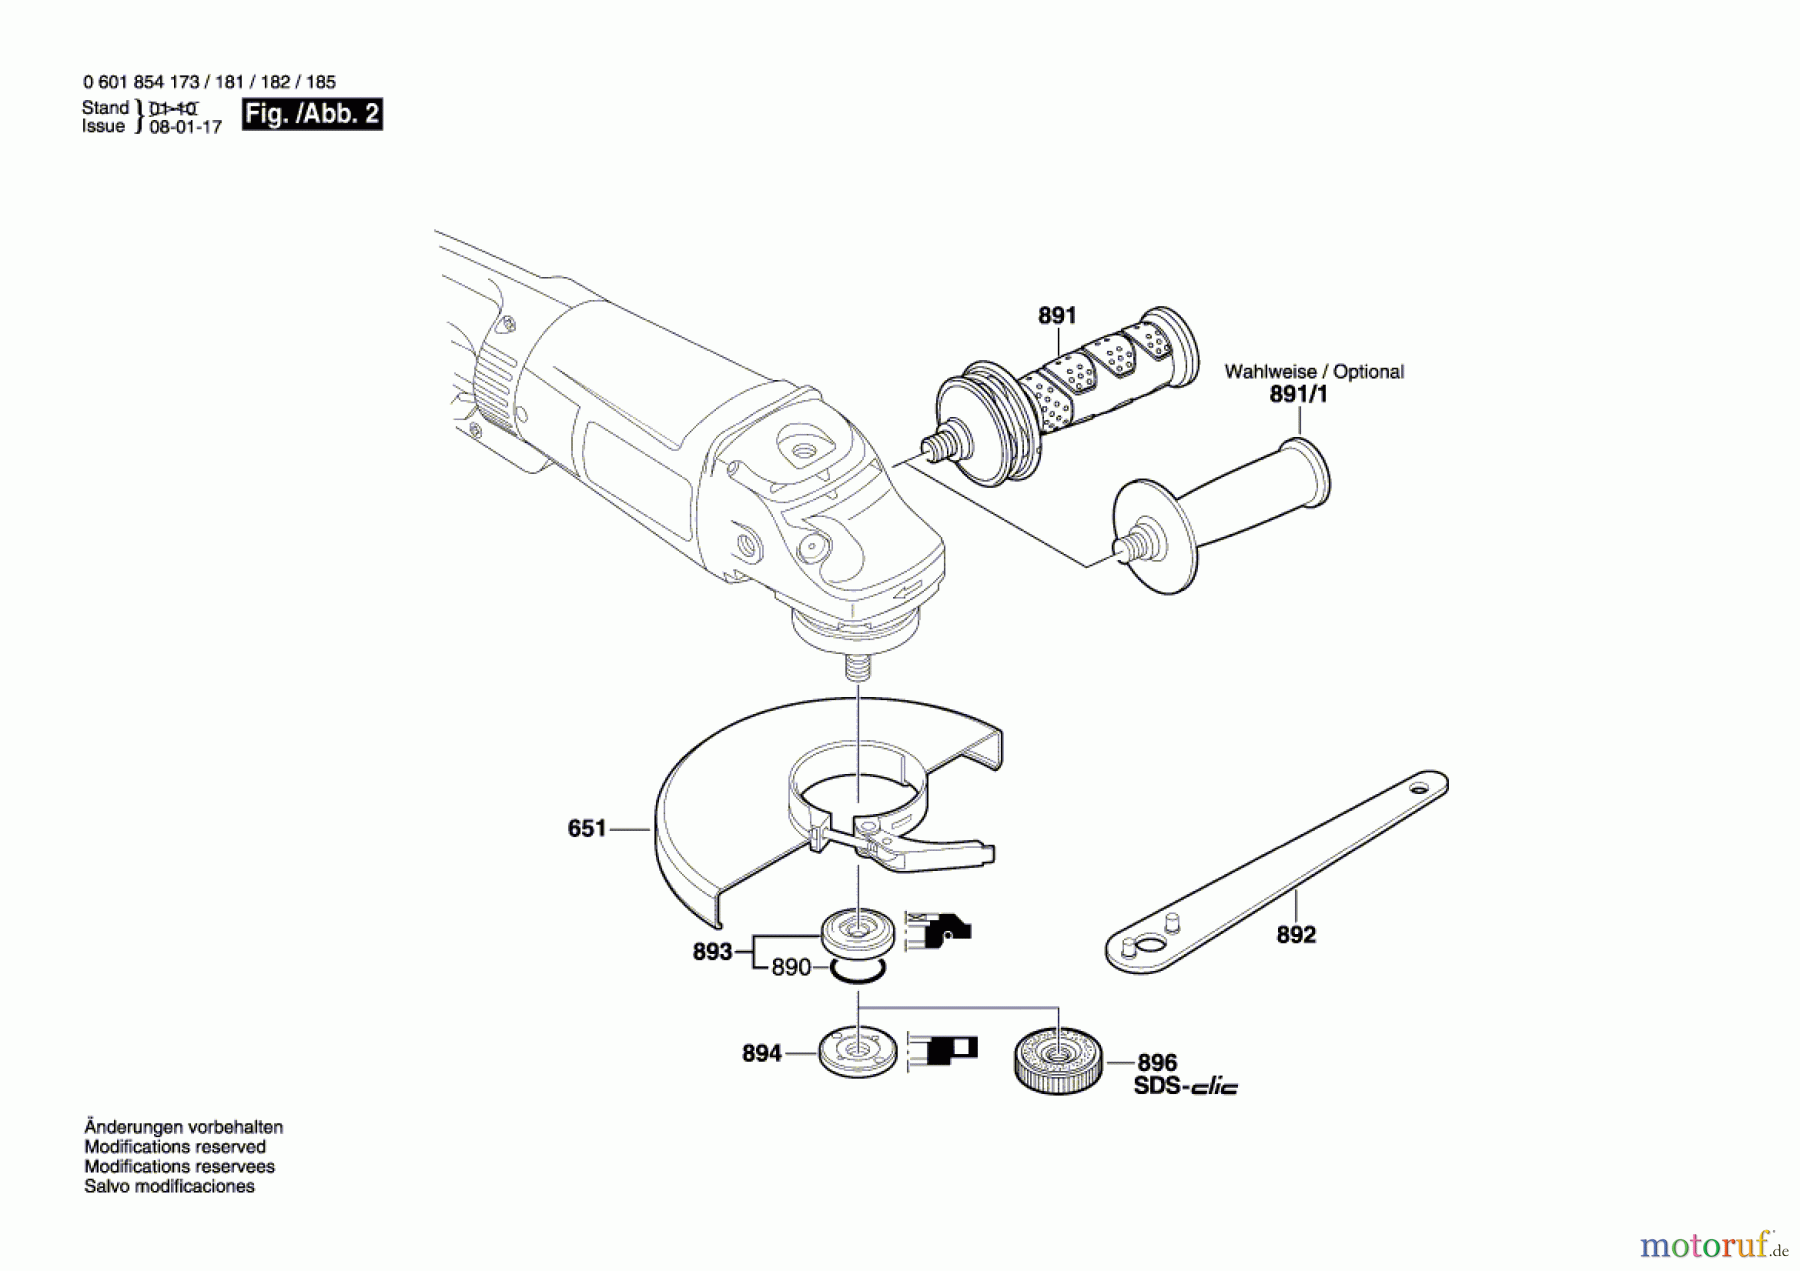  Bosch Werkzeug Winkelschleifer GWS 24-230 B Seite 2